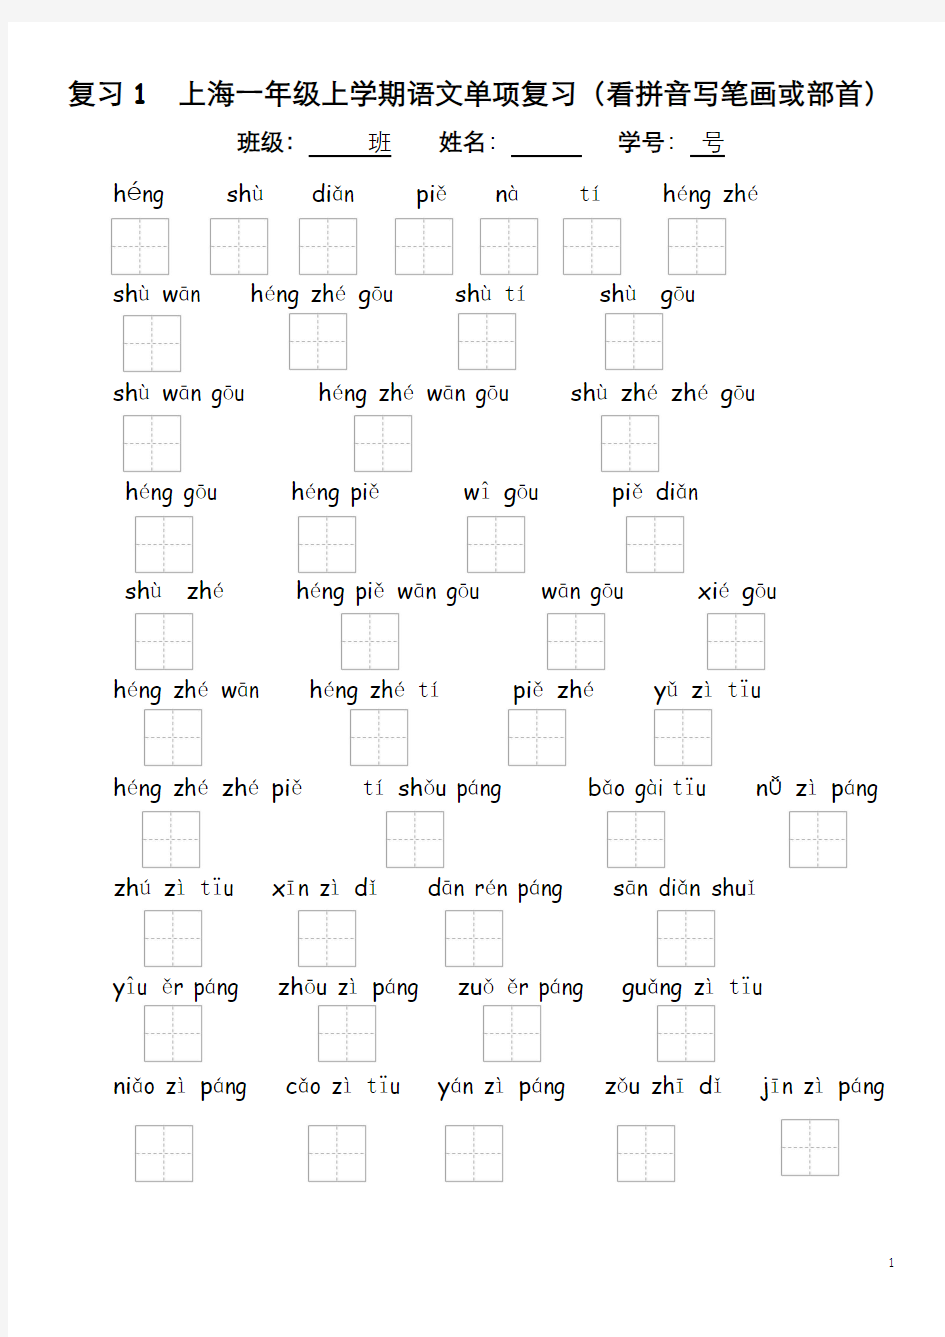 1-复习1上海一年级上学期语文单项复习(看拼音写笔画或部首)看拼音写笔画汇总表